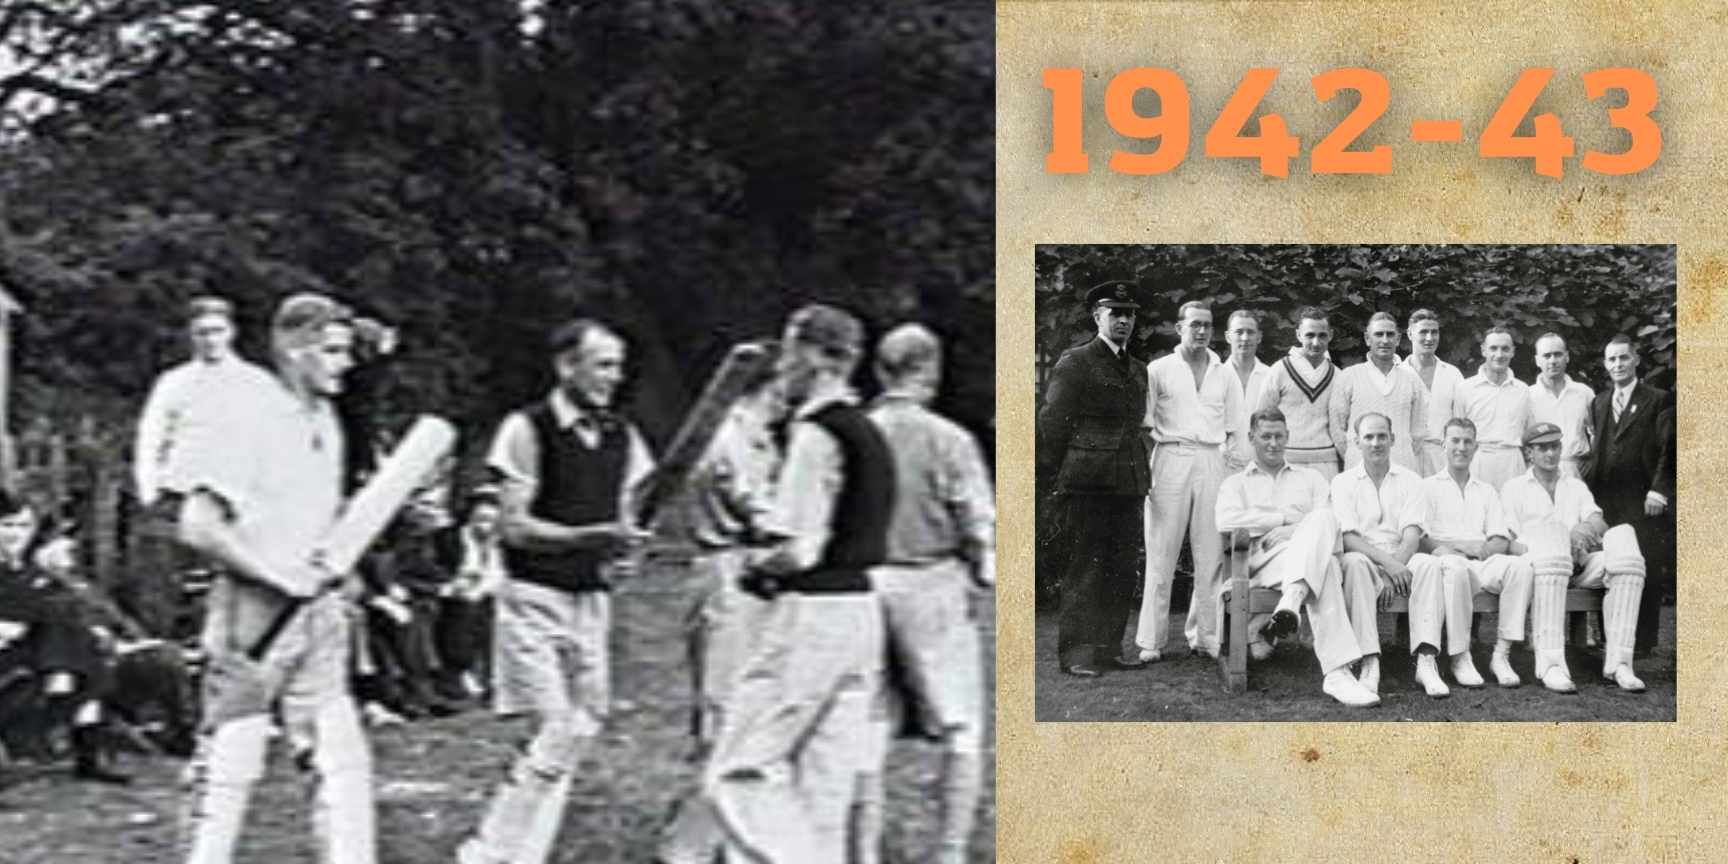 1942-43 cricket